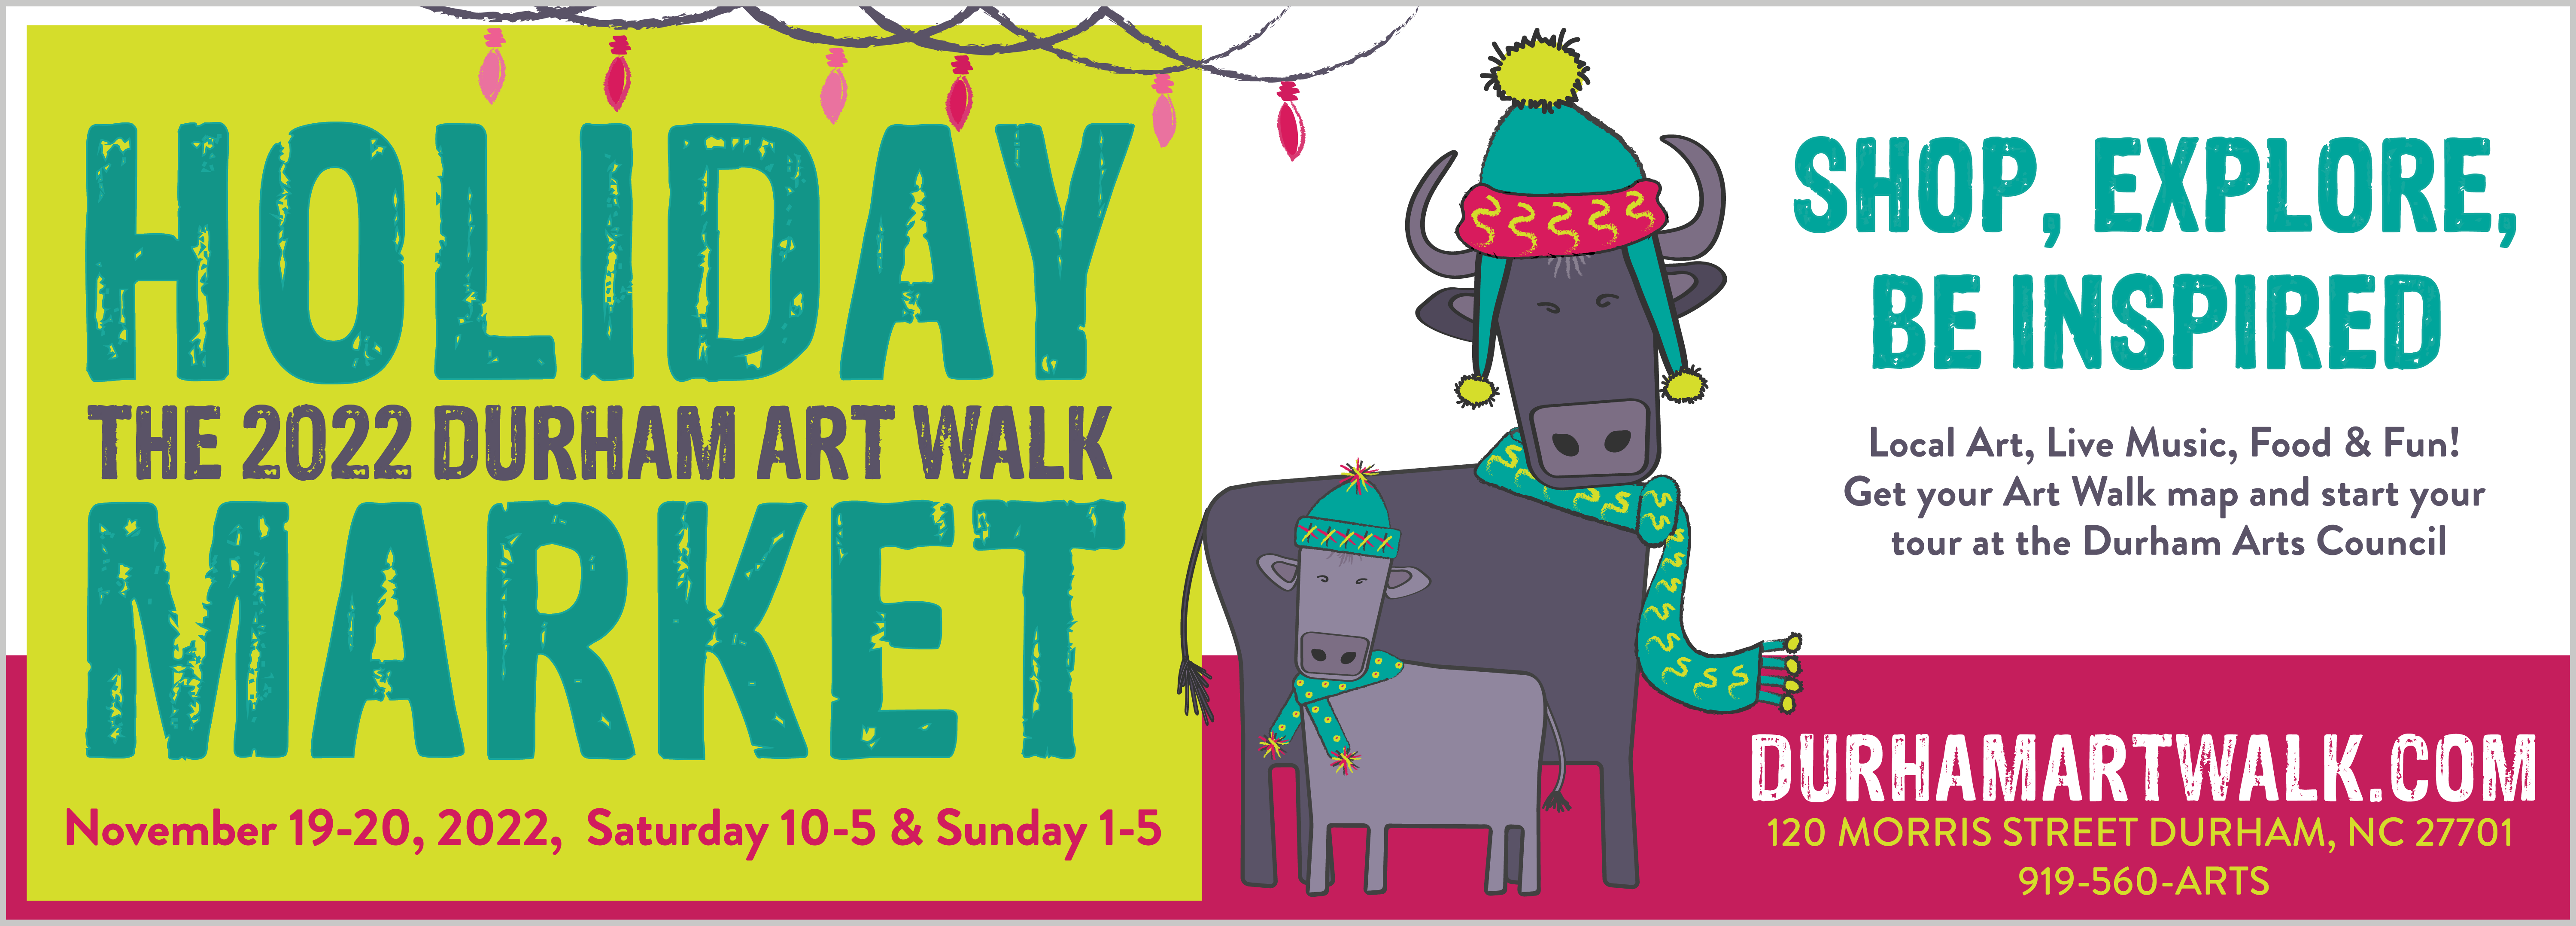 Durham Art Walk Holiday Market 2022